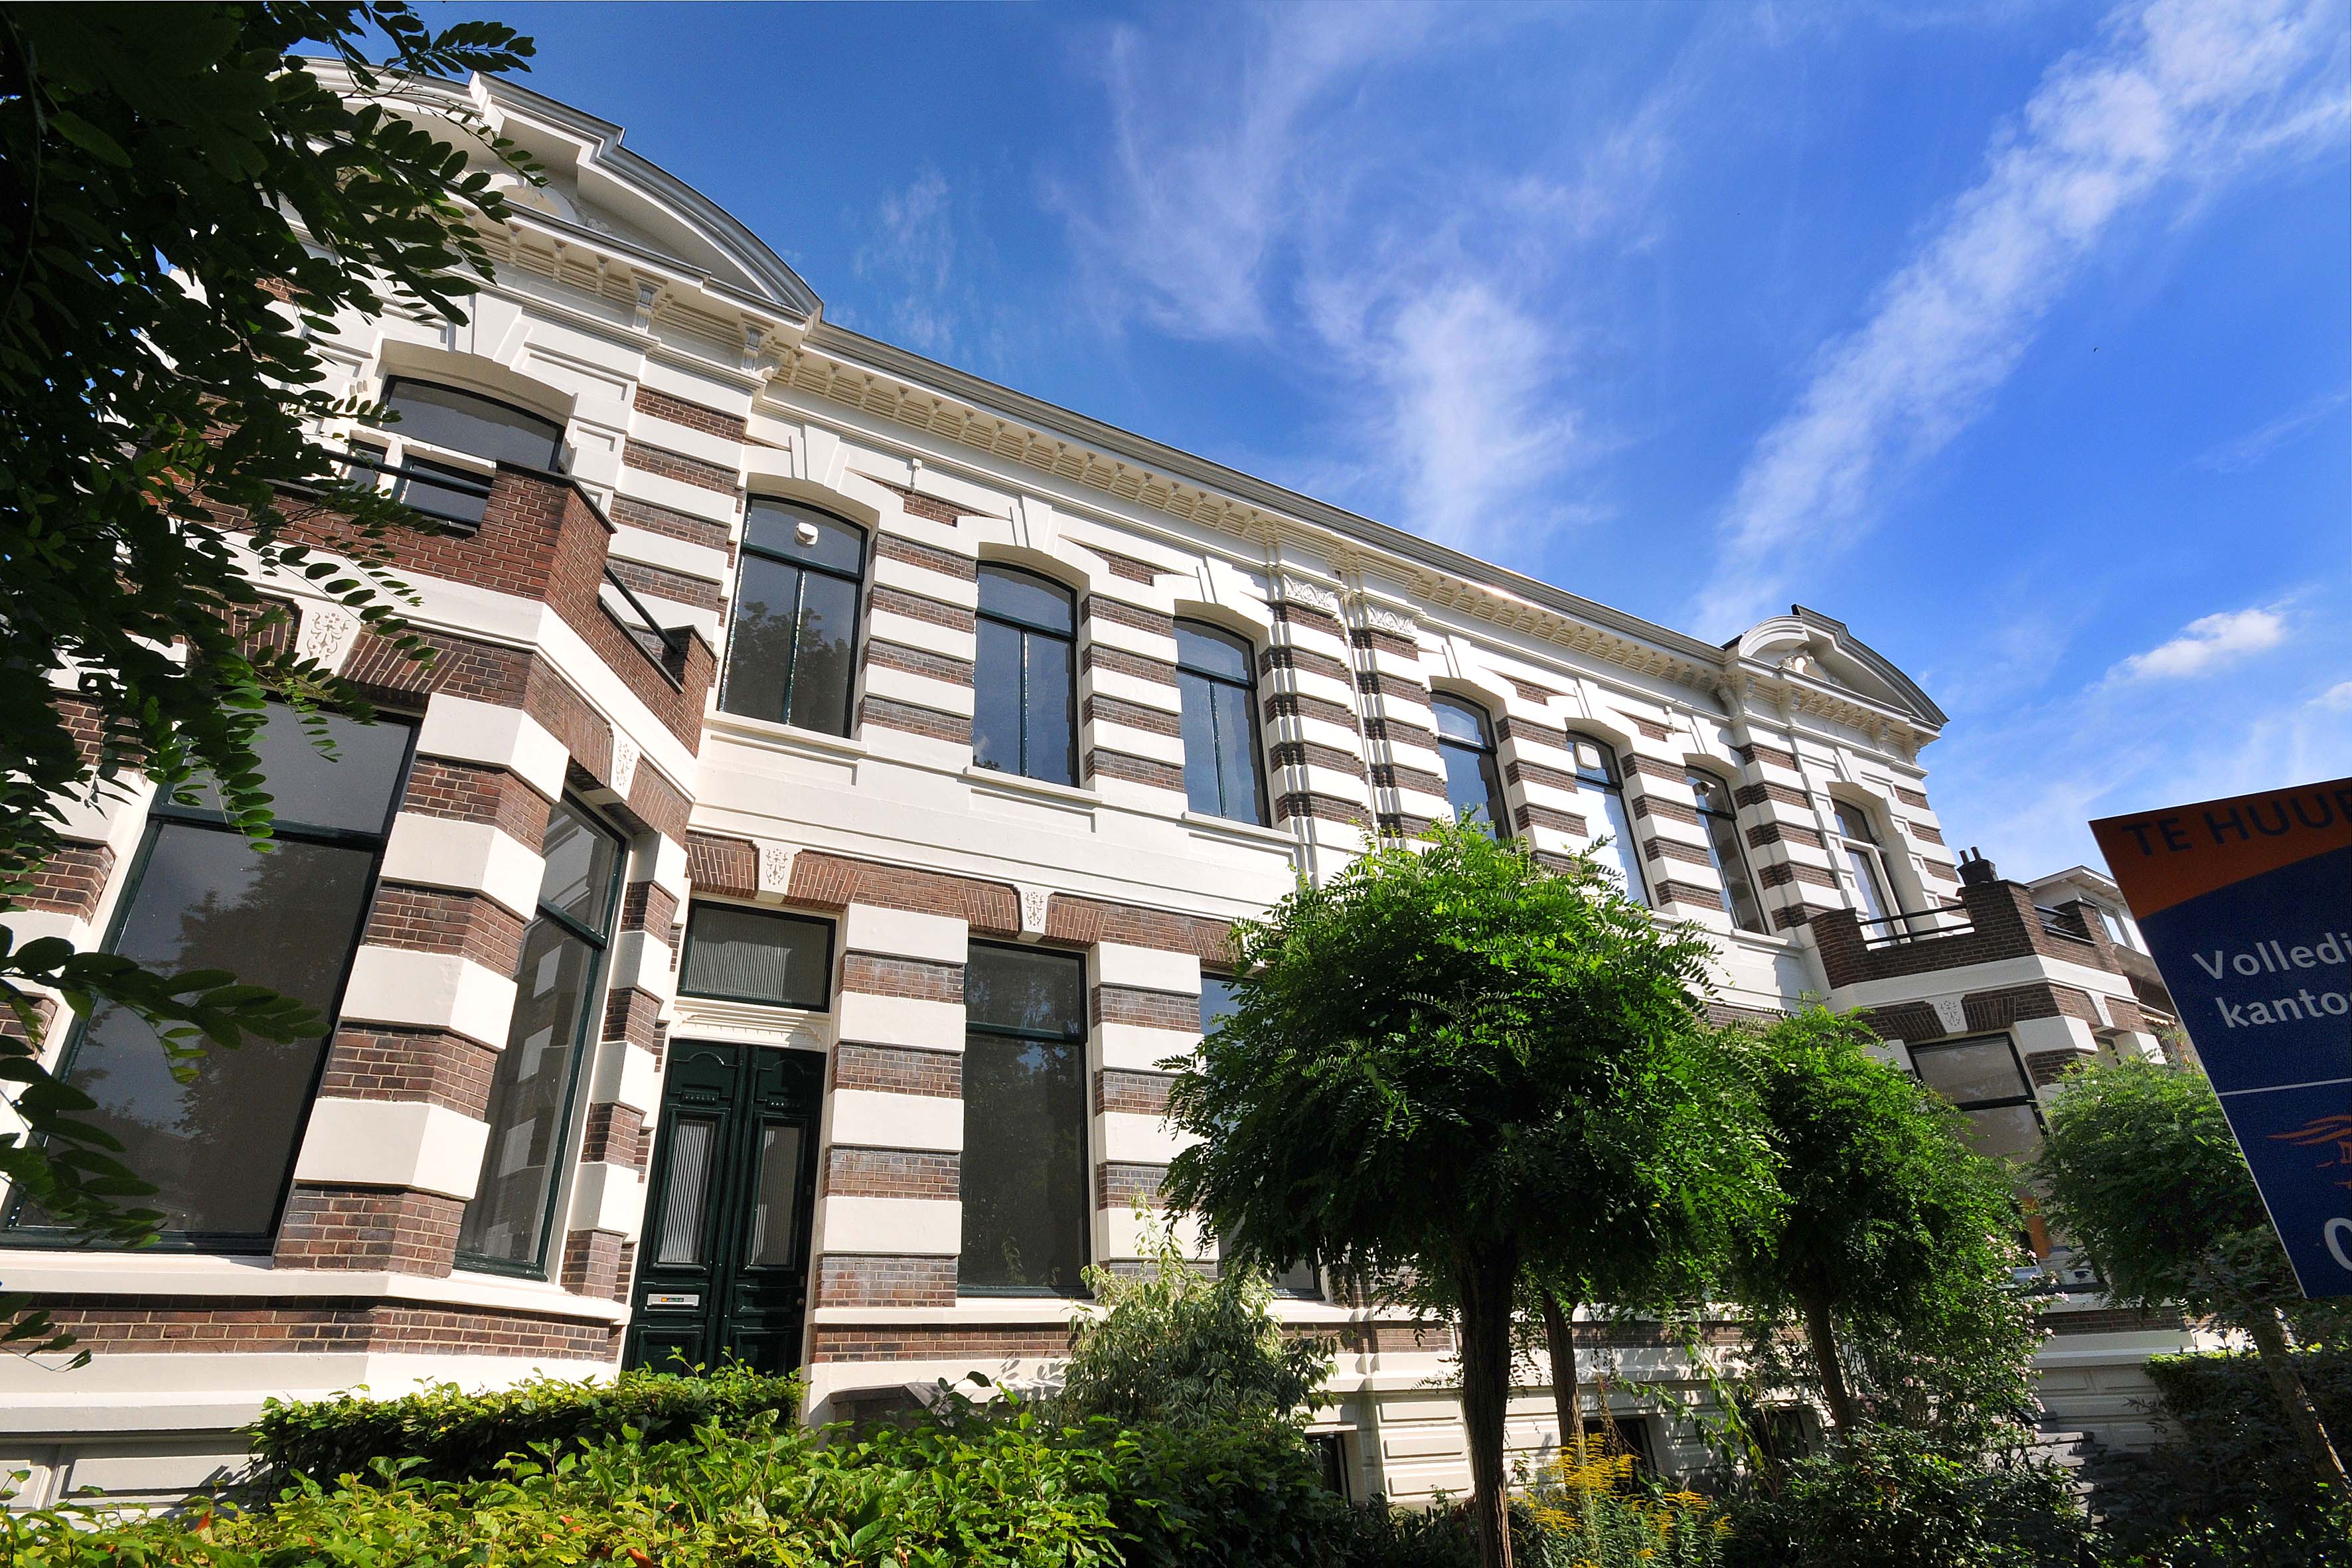 Kantoor- / woningcomplex van ca. 1.400 m² Boulevard Heuvelink verkocht